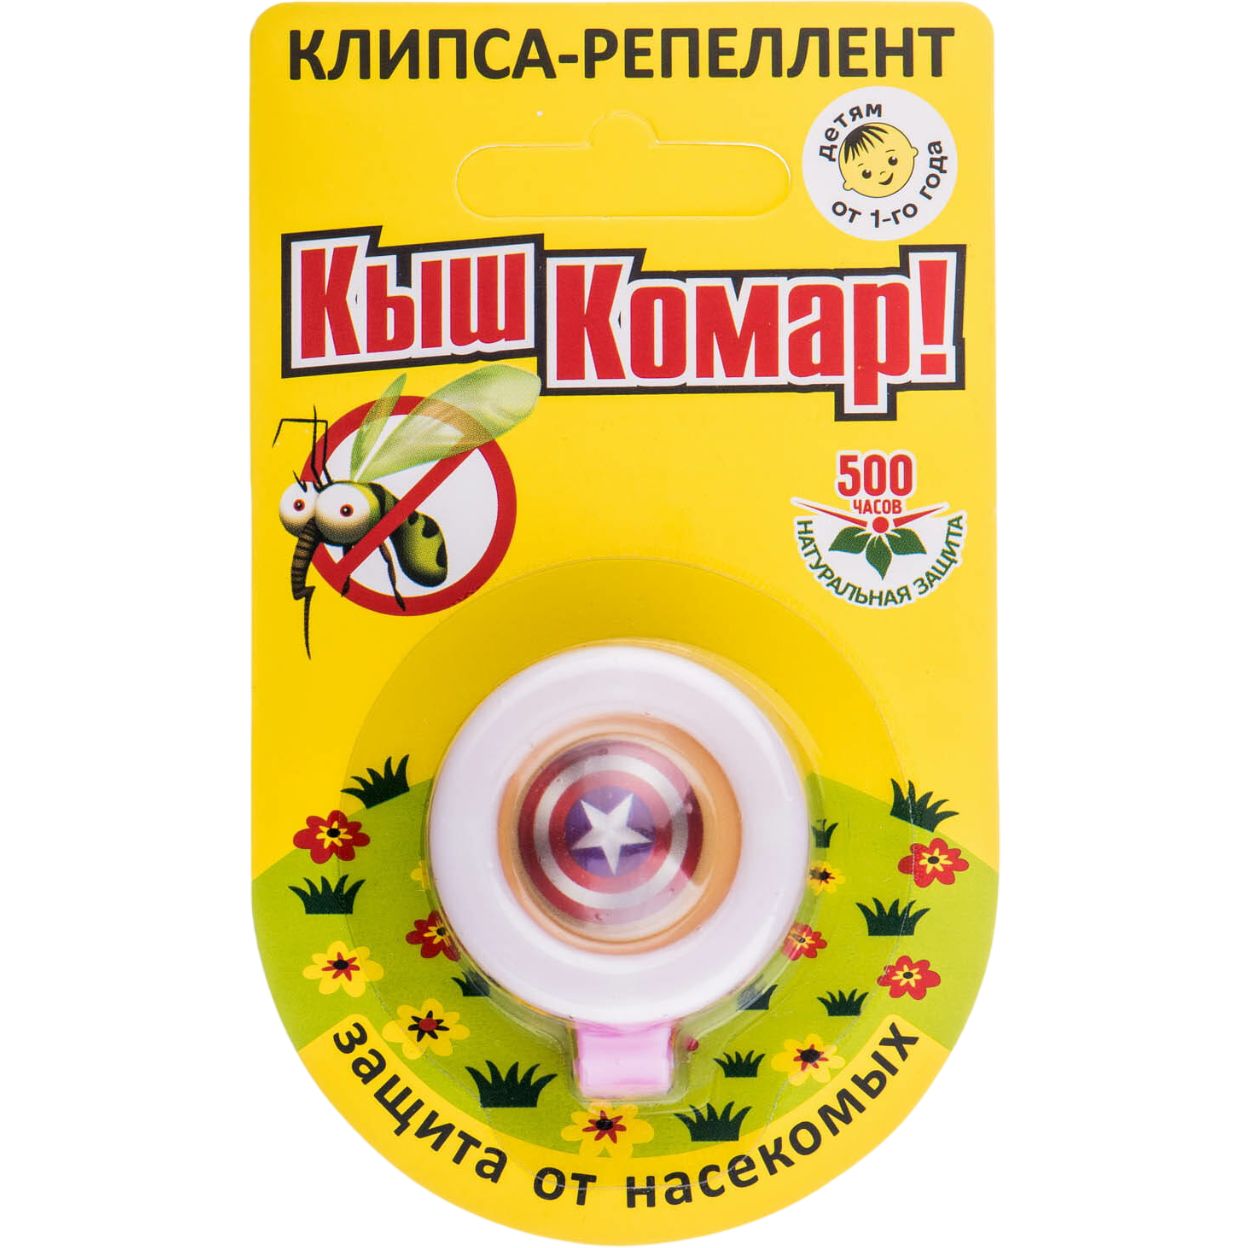 Клипса-репеллент от комаров Киш Комар! - фото 1